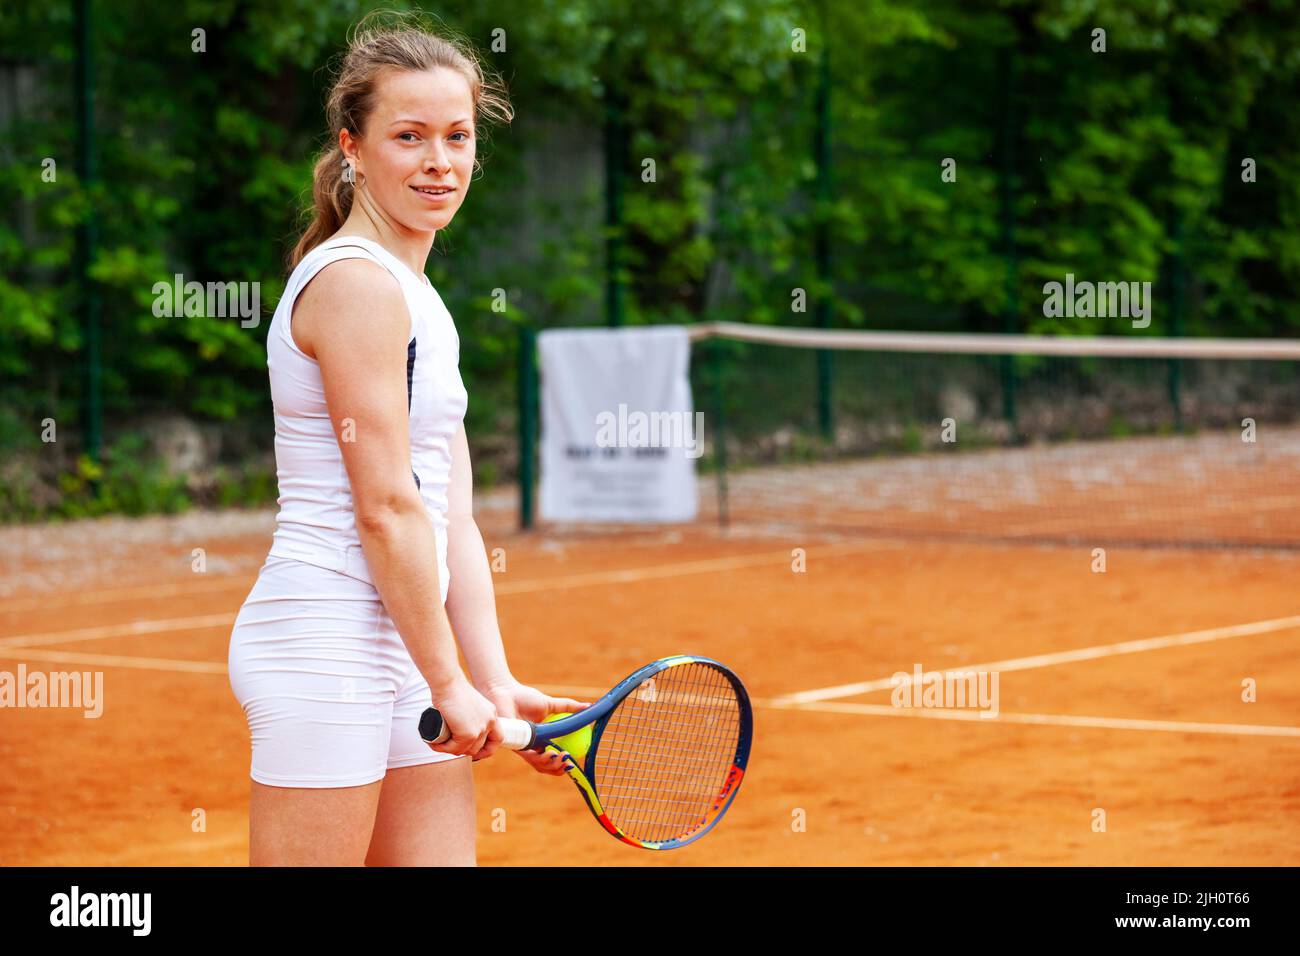 Heureux tennis player holding la raquette en position d'attente. Banque D'Images